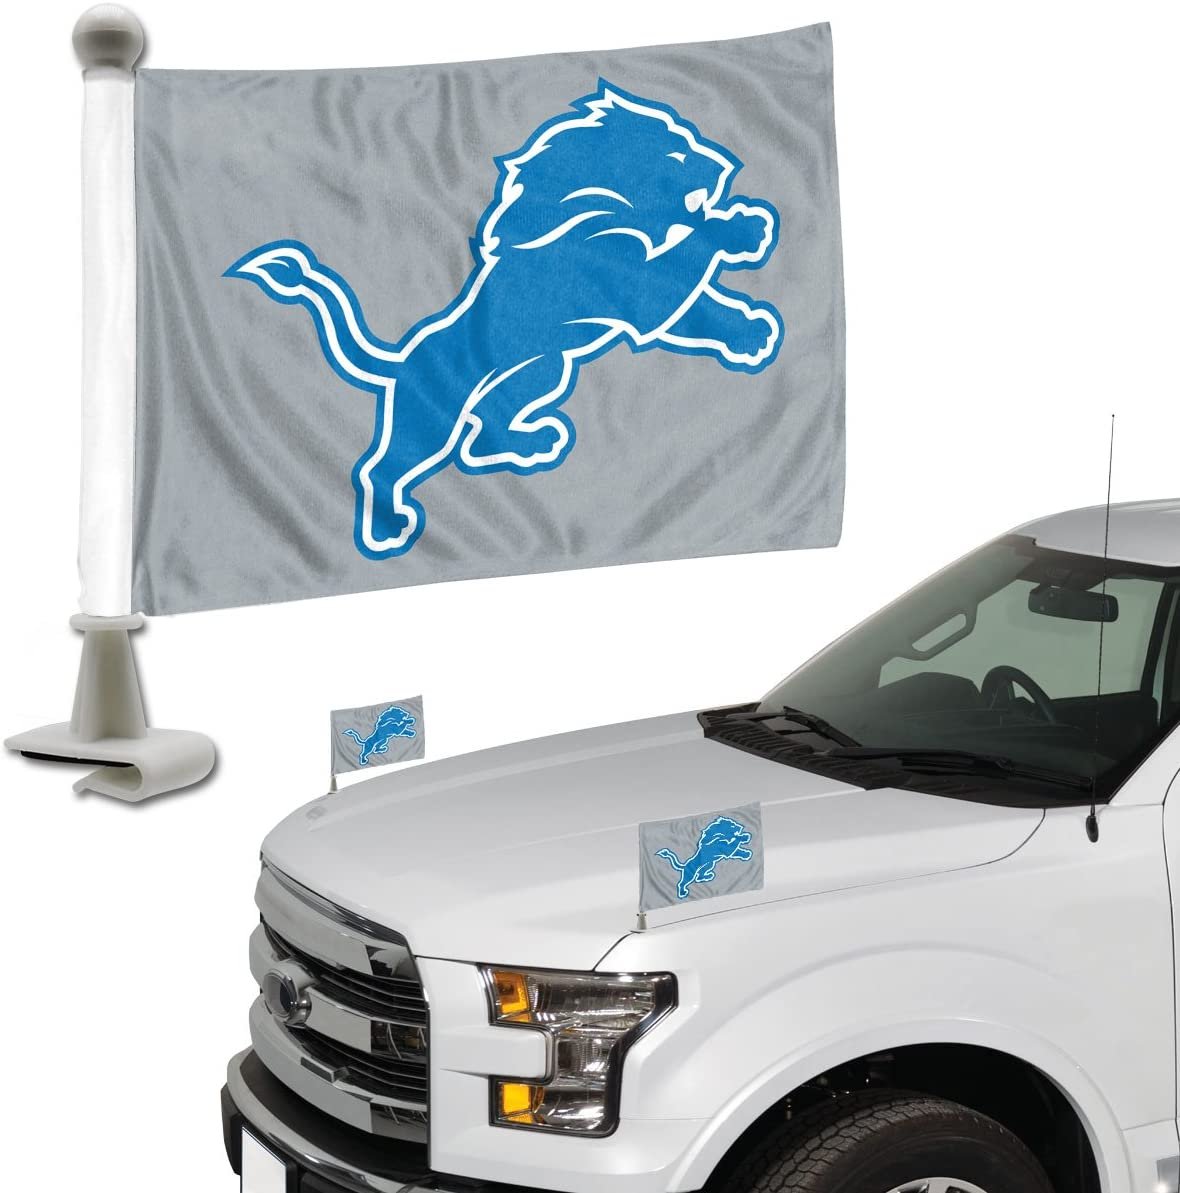 FANMATS ProMark NFL Detroit Lions Flag Set 2-Piece Ambassador Style, Team Color, One Size